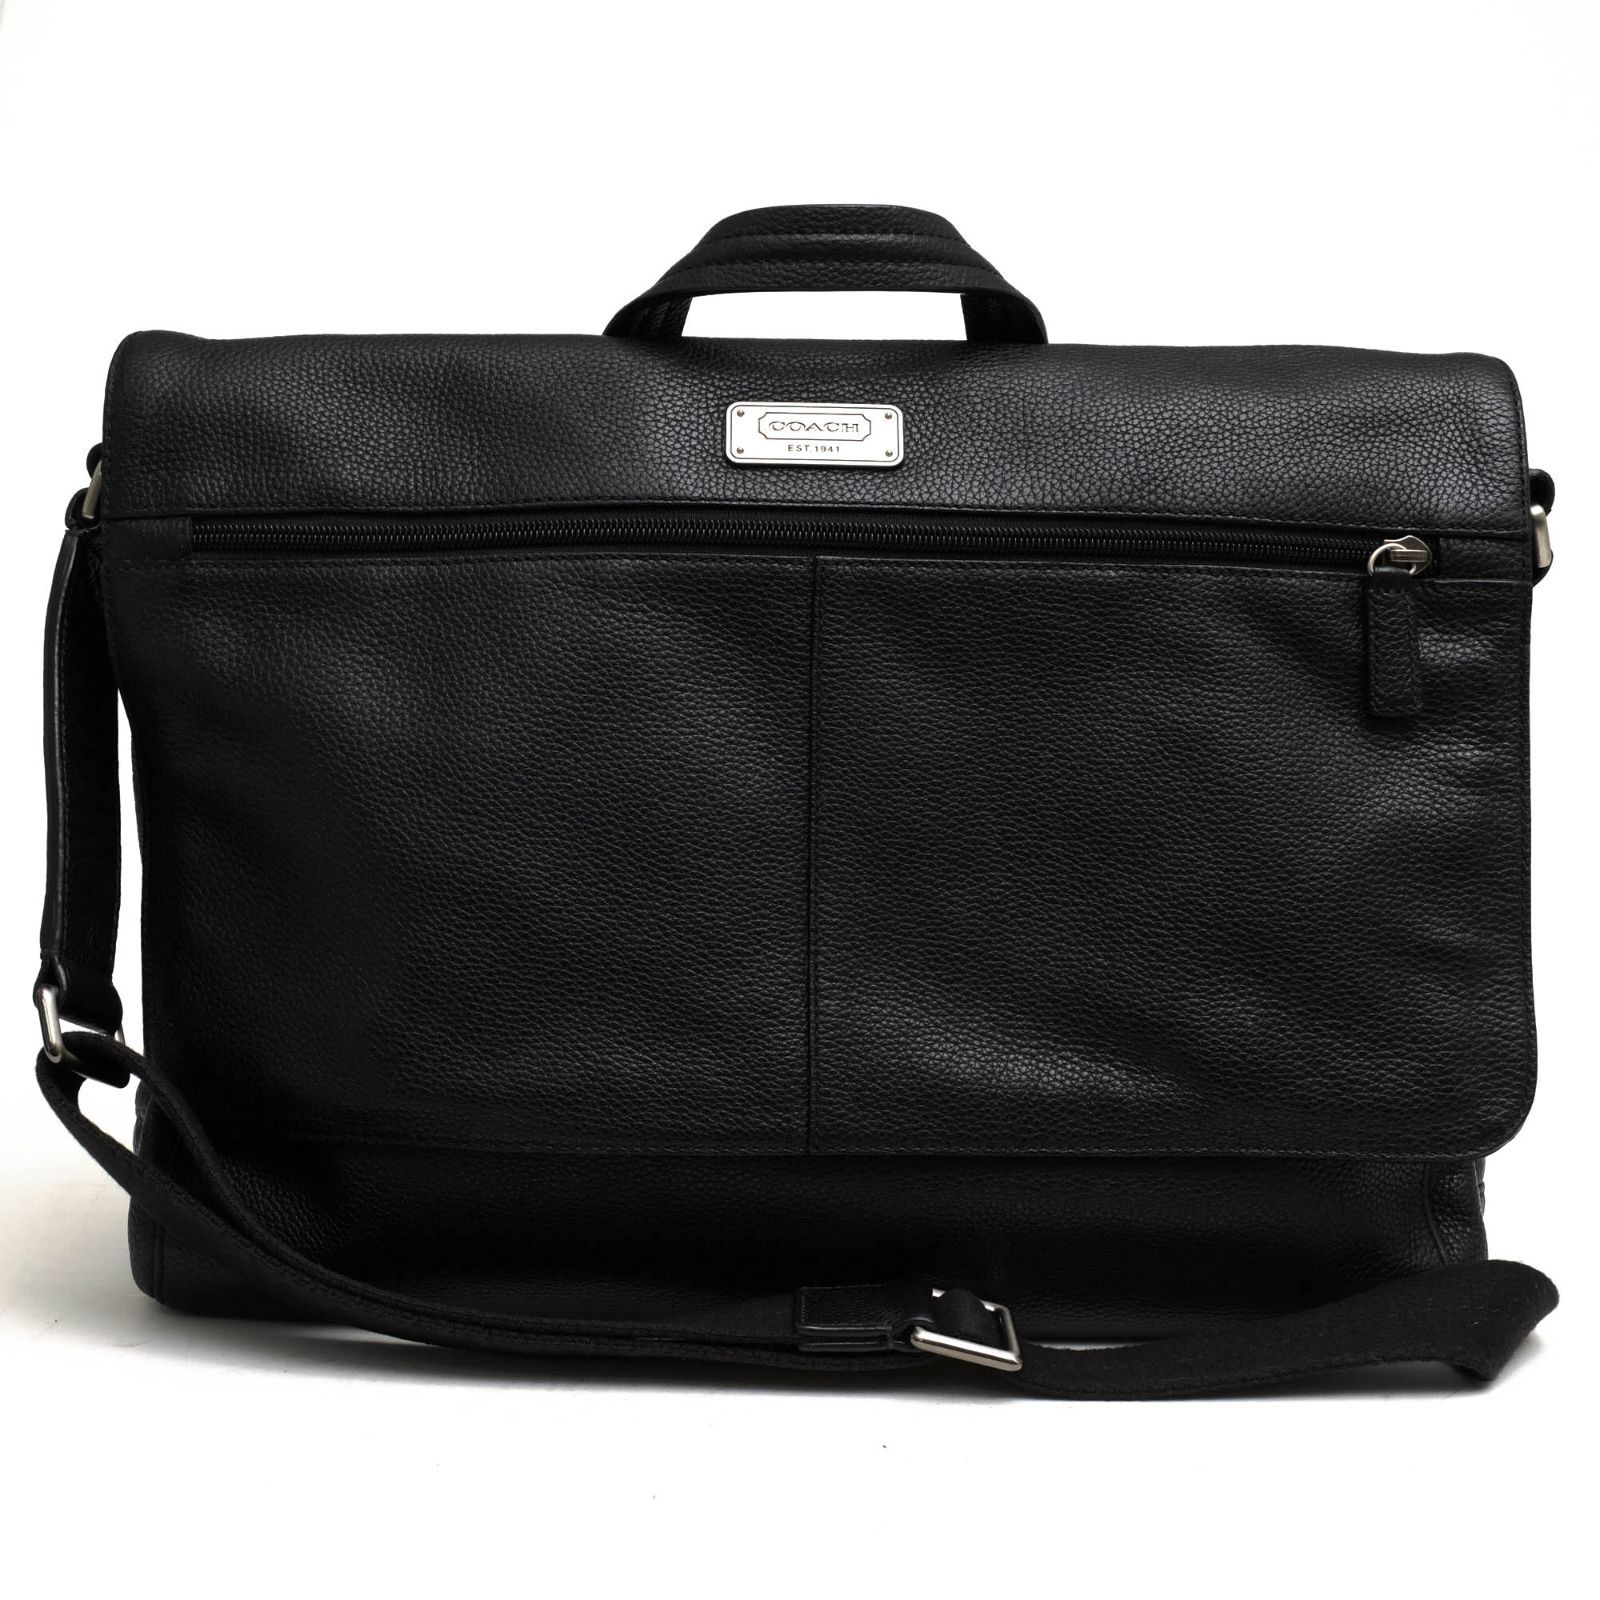 コーチ／COACH バッグ ショルダーバッグ 鞄 F70367 Trans Atlantic Leather E/W Messenger Bag  トランスアトランティック A4サイズ収納可 メッセンジャーバッグ シボ革 シュリンクレザー